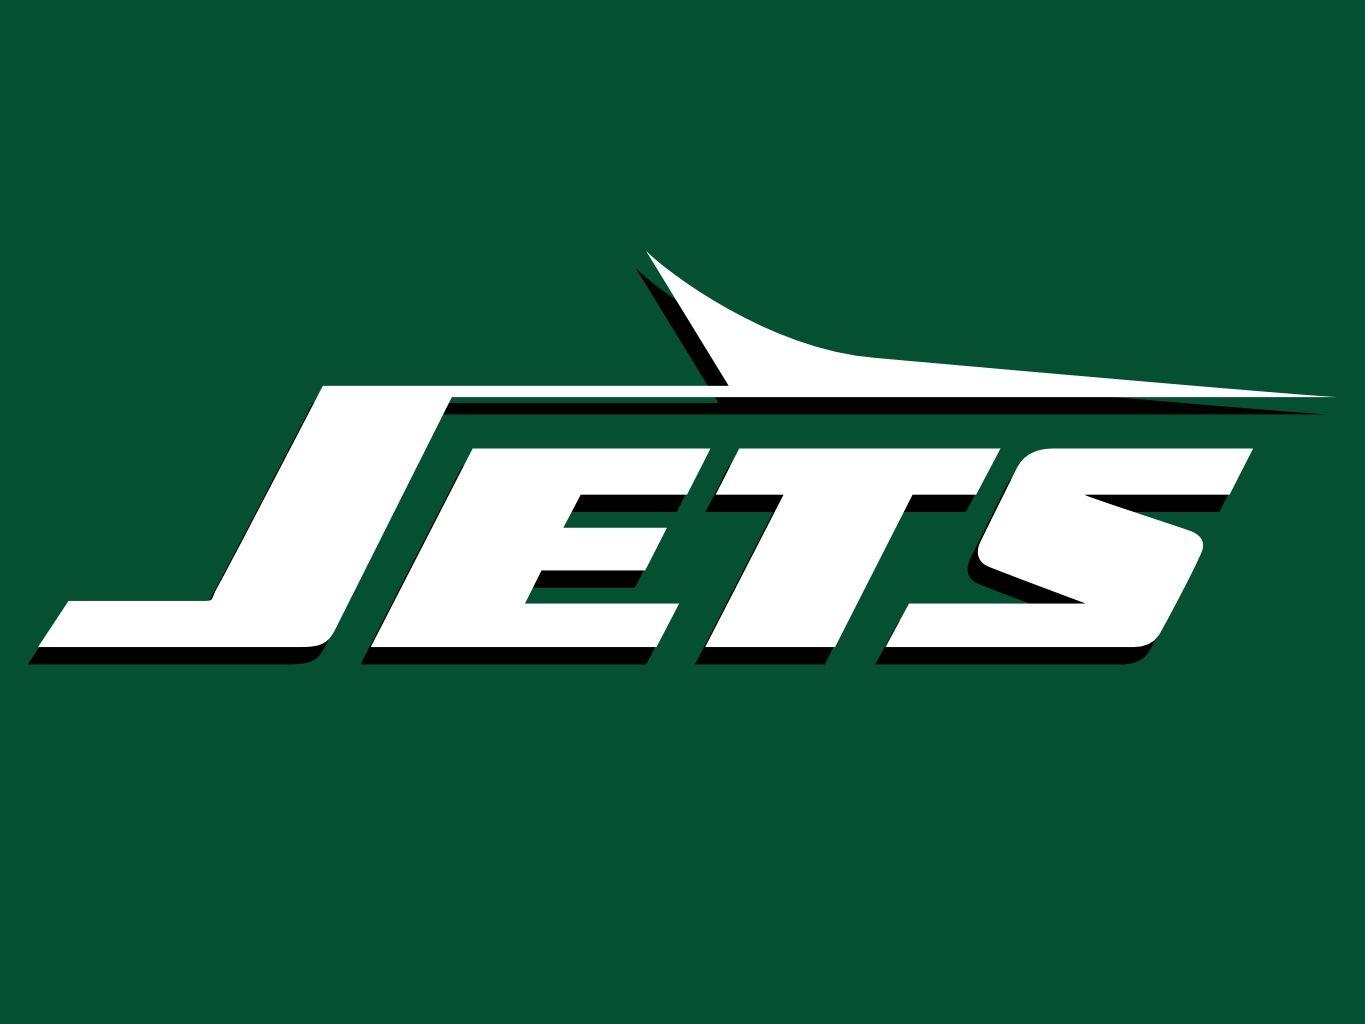 NY Jets Old Logo - NY Jets logo : nyjets